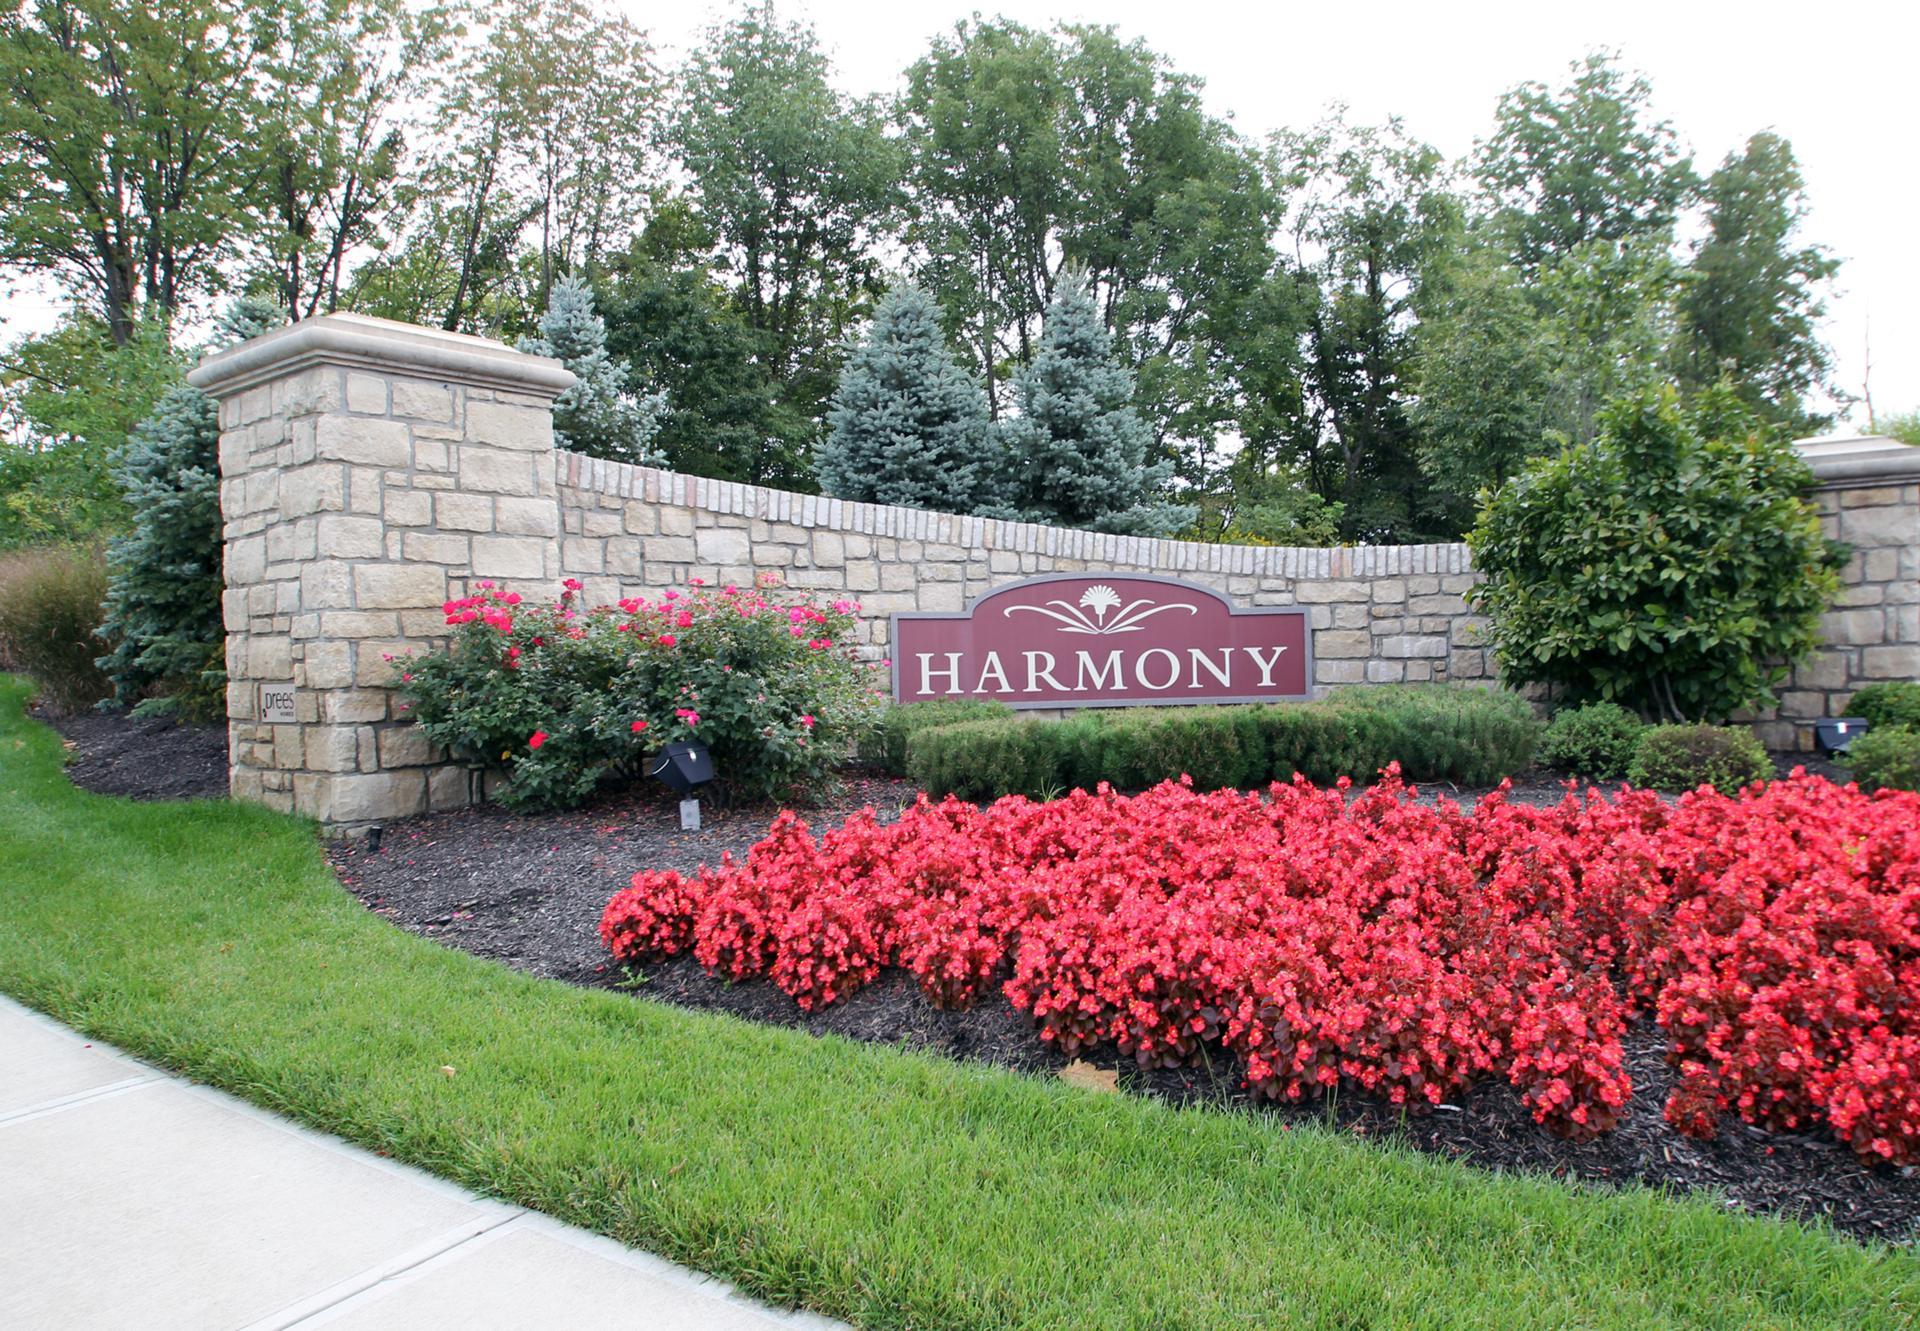 The Harmony Entrance